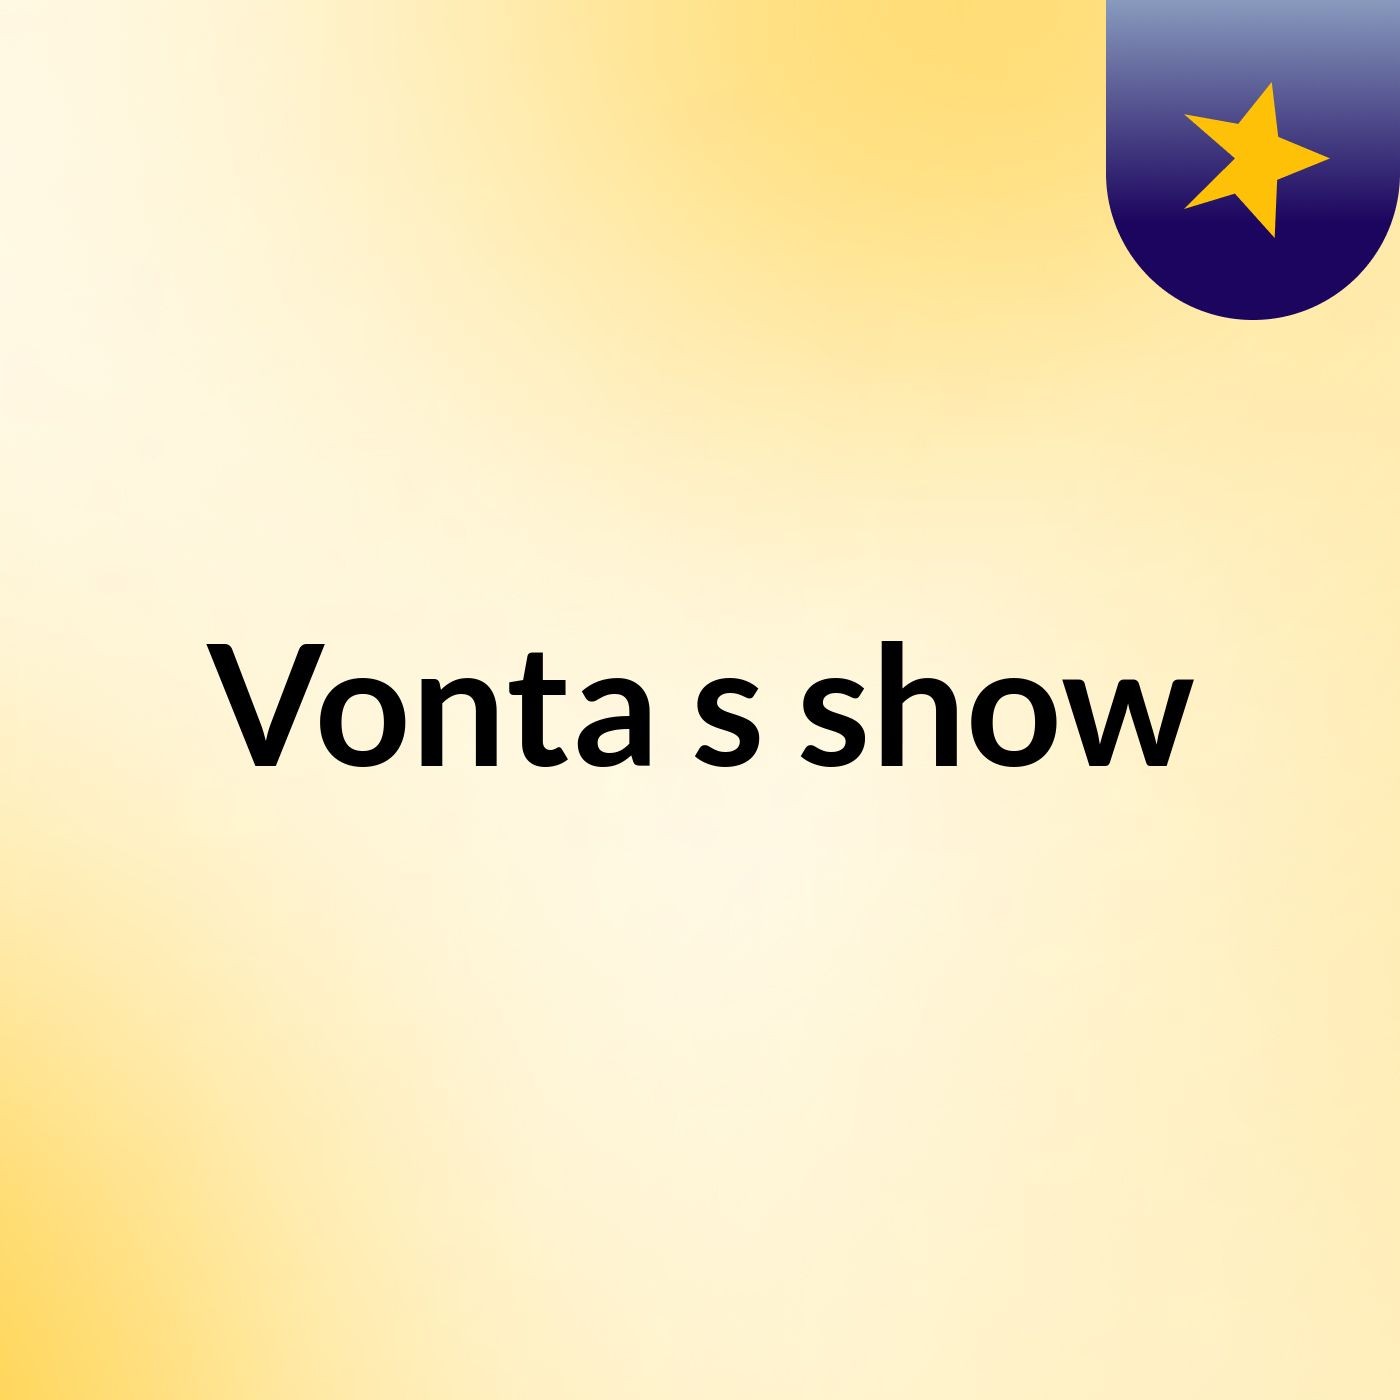 Vonta's show